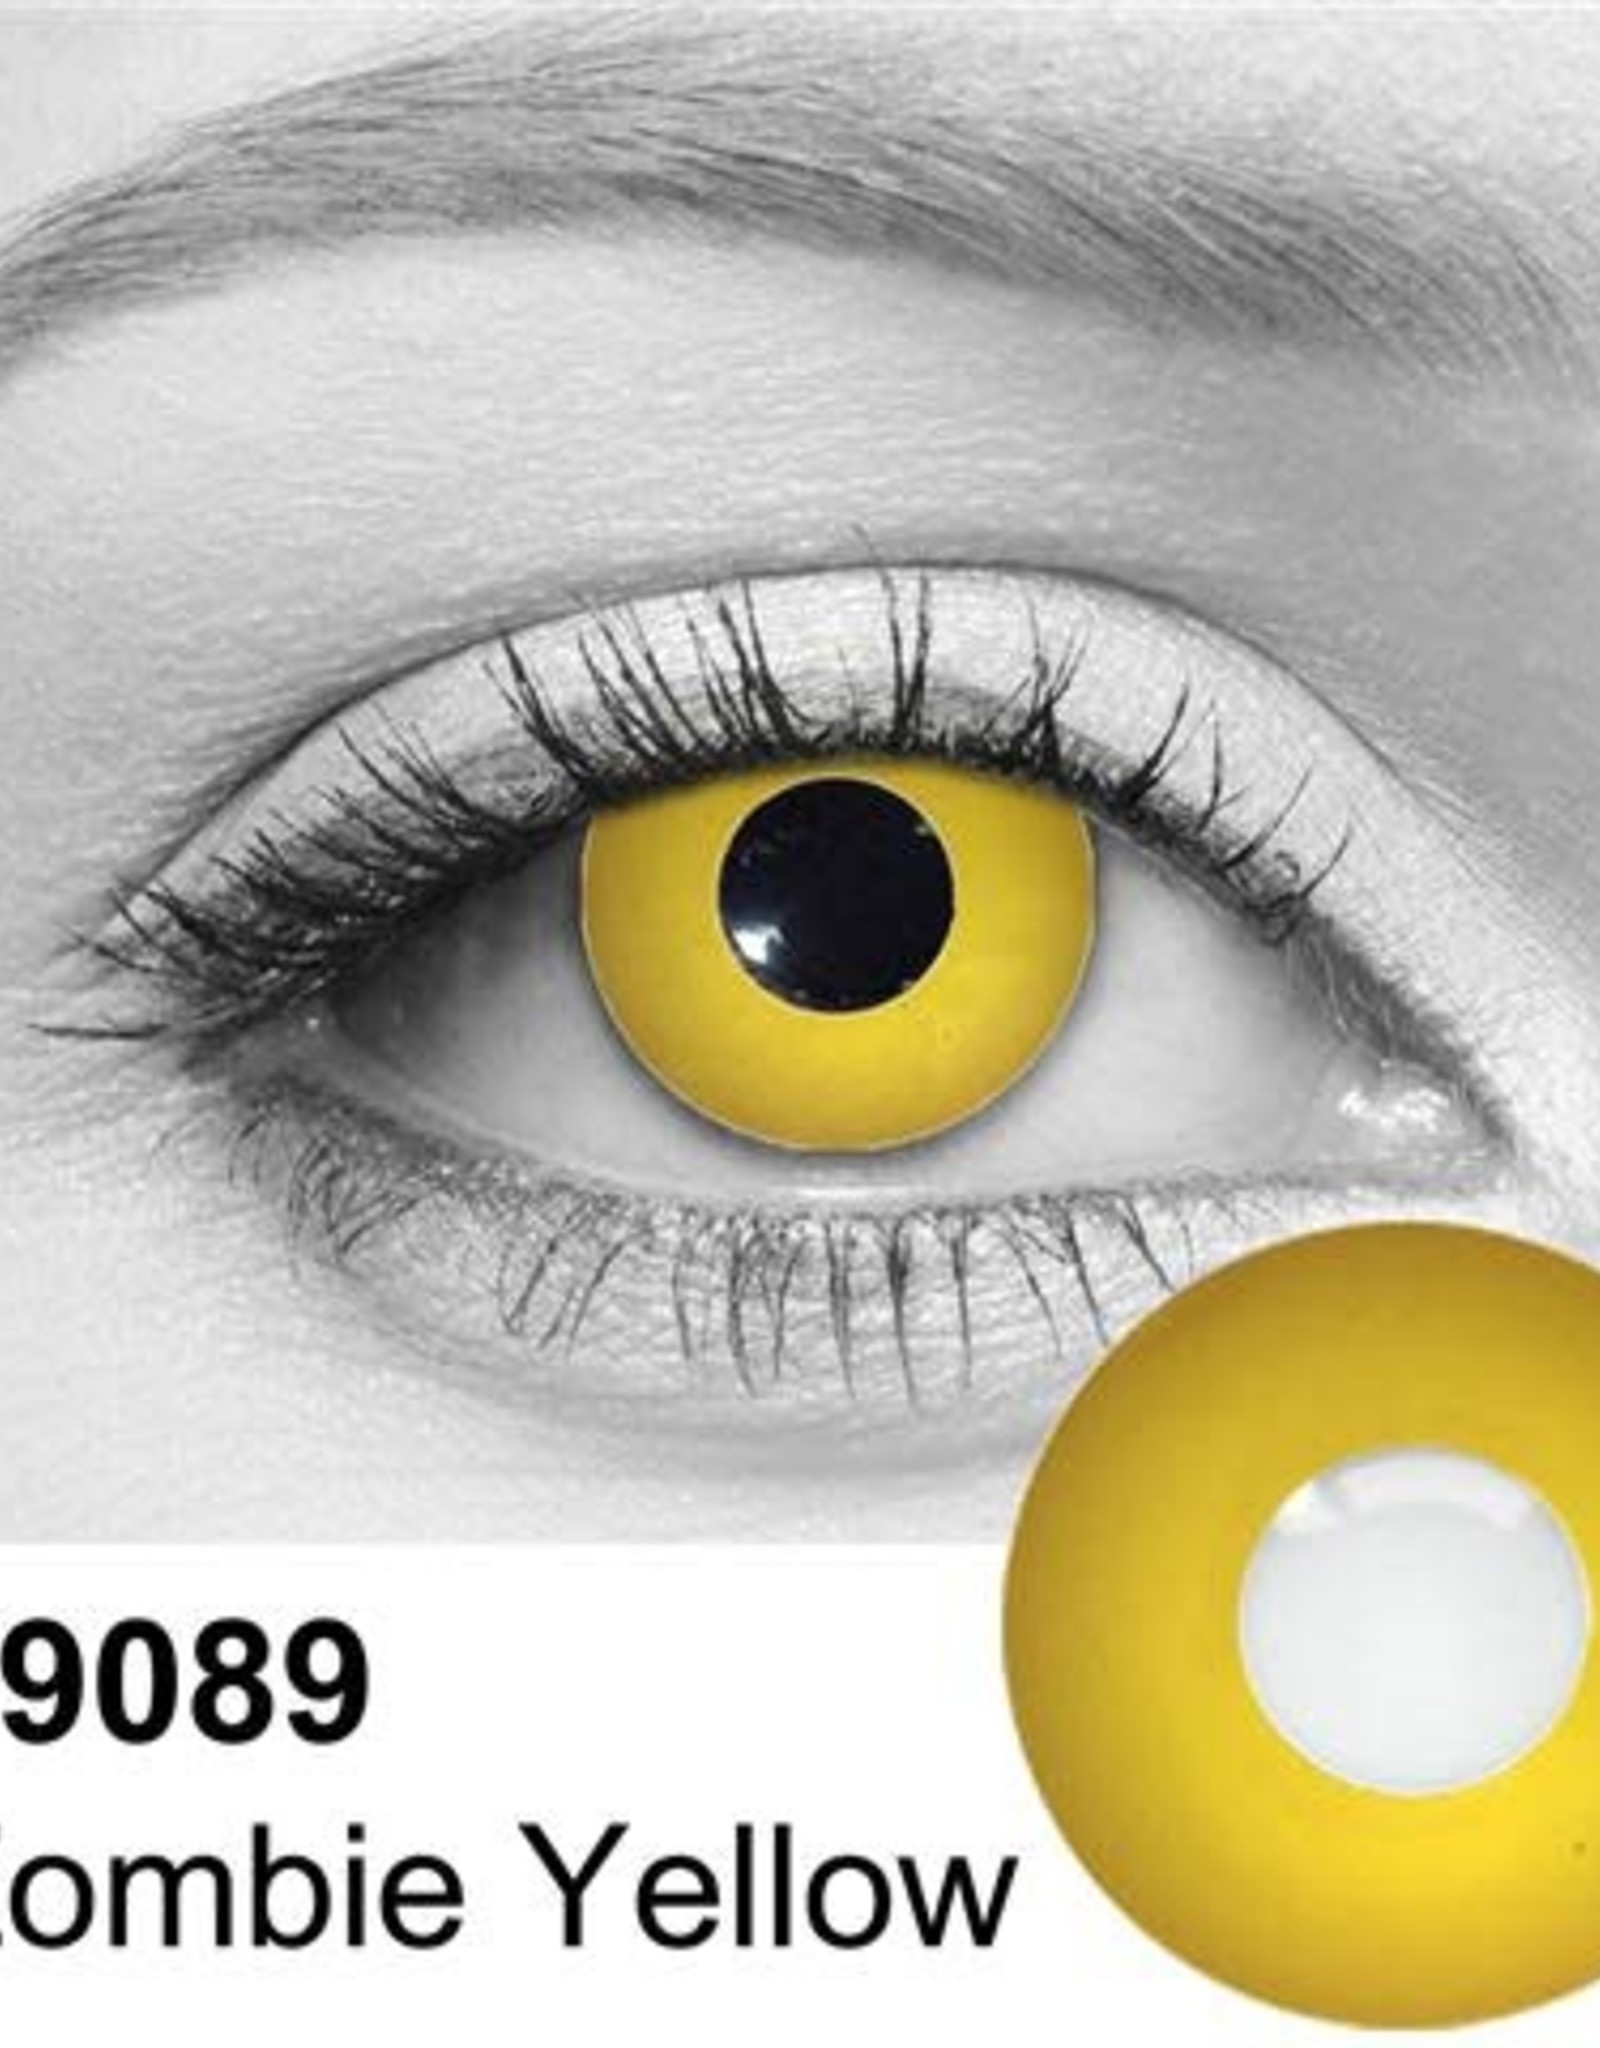 Zombie Yellow Contact Lenses